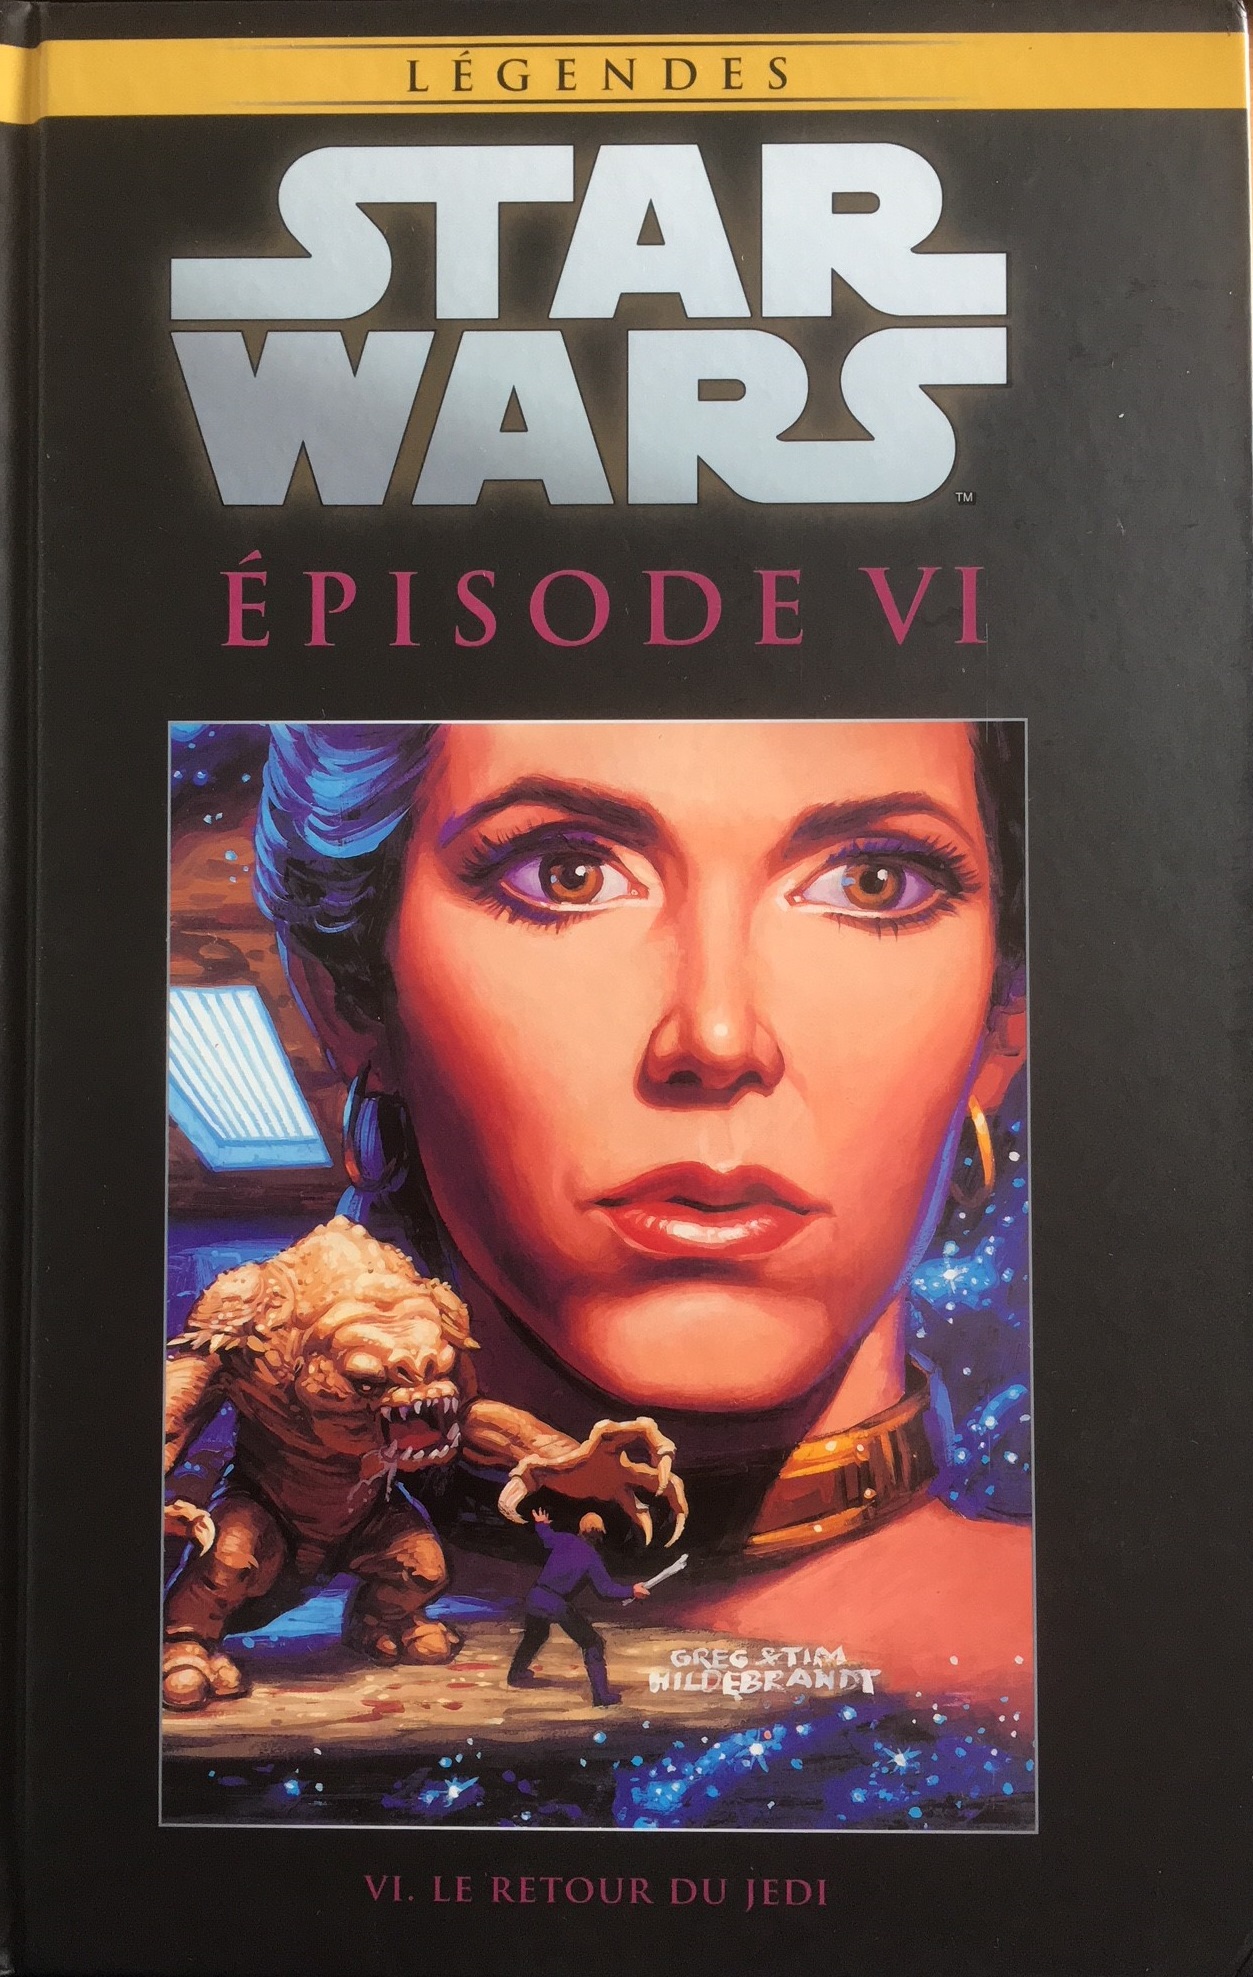  Star Wars Légendes T61 : Episode VI - Le retour du Jedi (0), comics chez Hachette de Goodwin, Williamson, Garzon, Palmer, Sienkiewicz, Scheele, Sharen, Hildebrandt